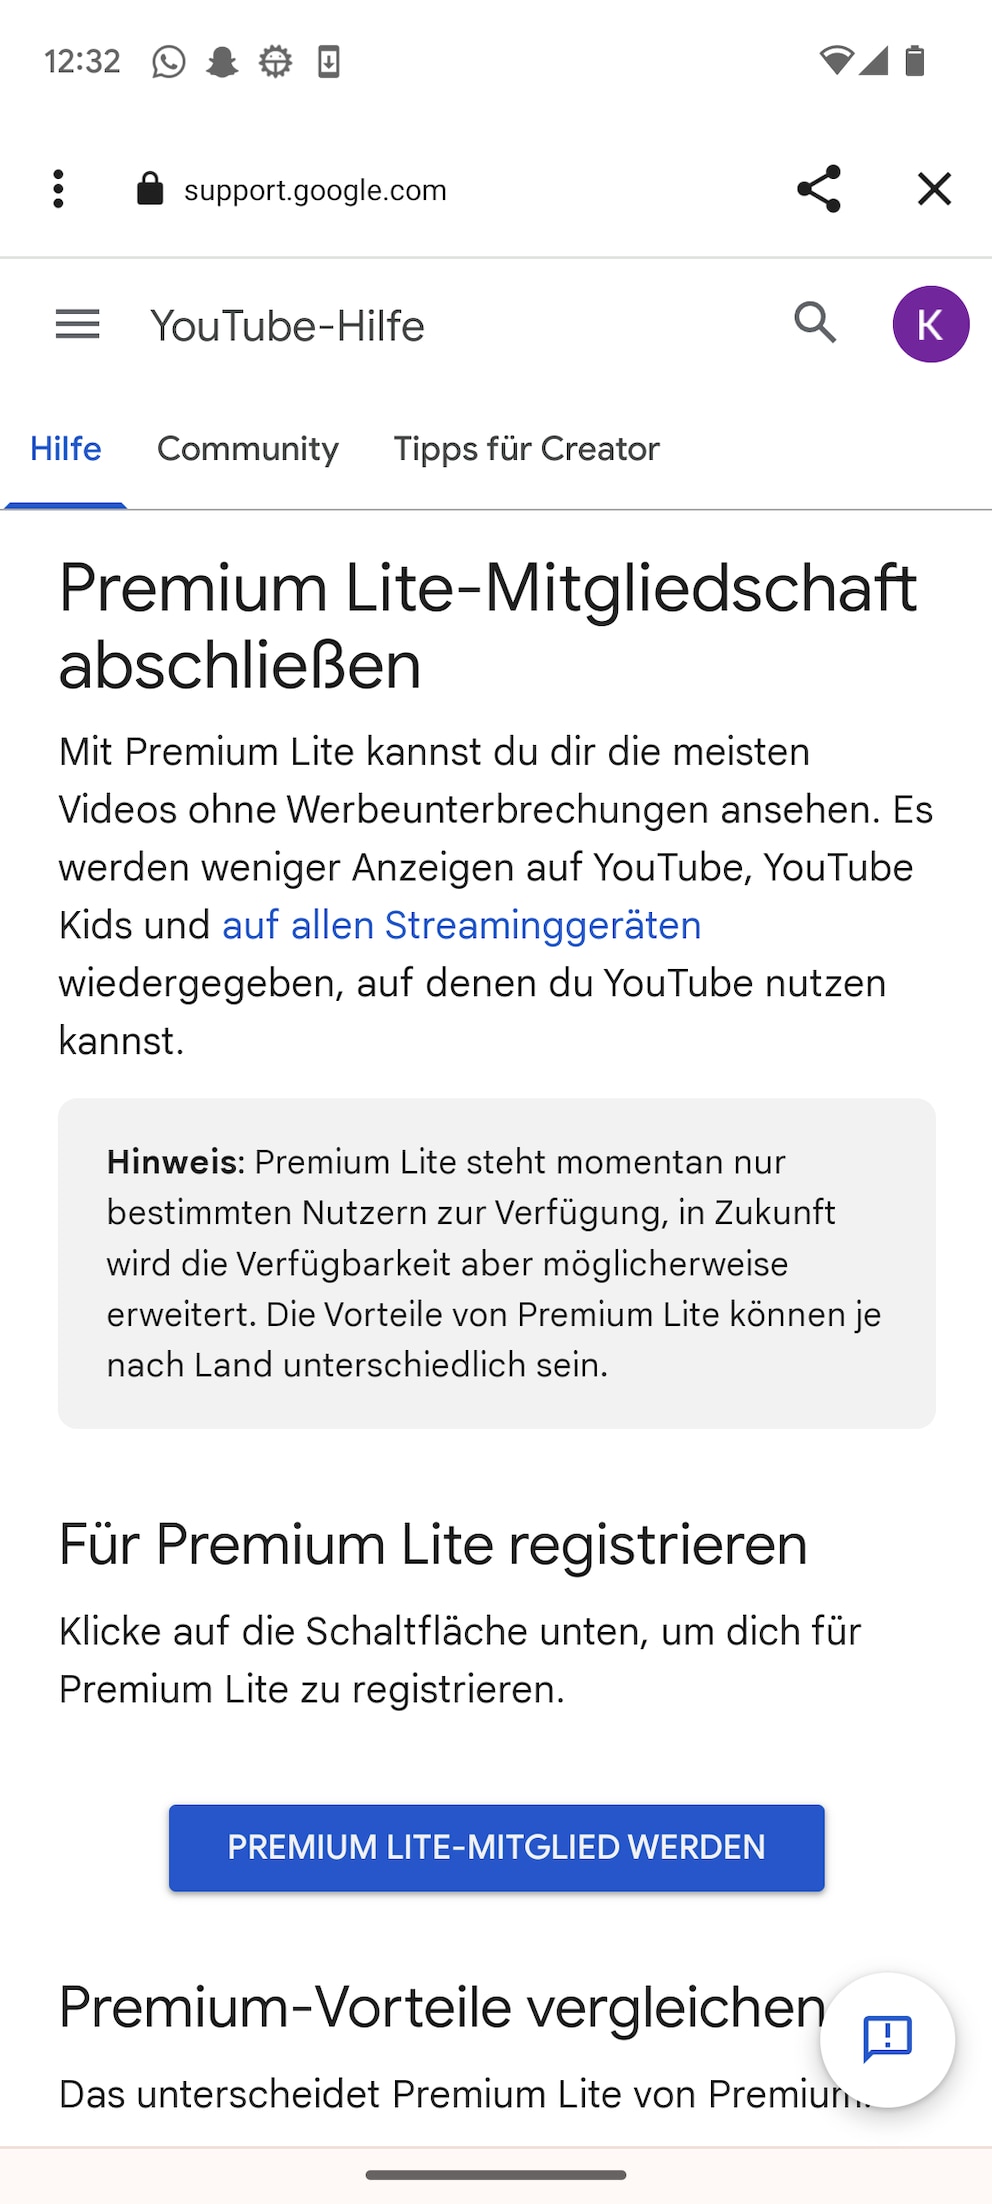 YouTube Premium Lite wird auf diesem Android-Handy nicht angeboten